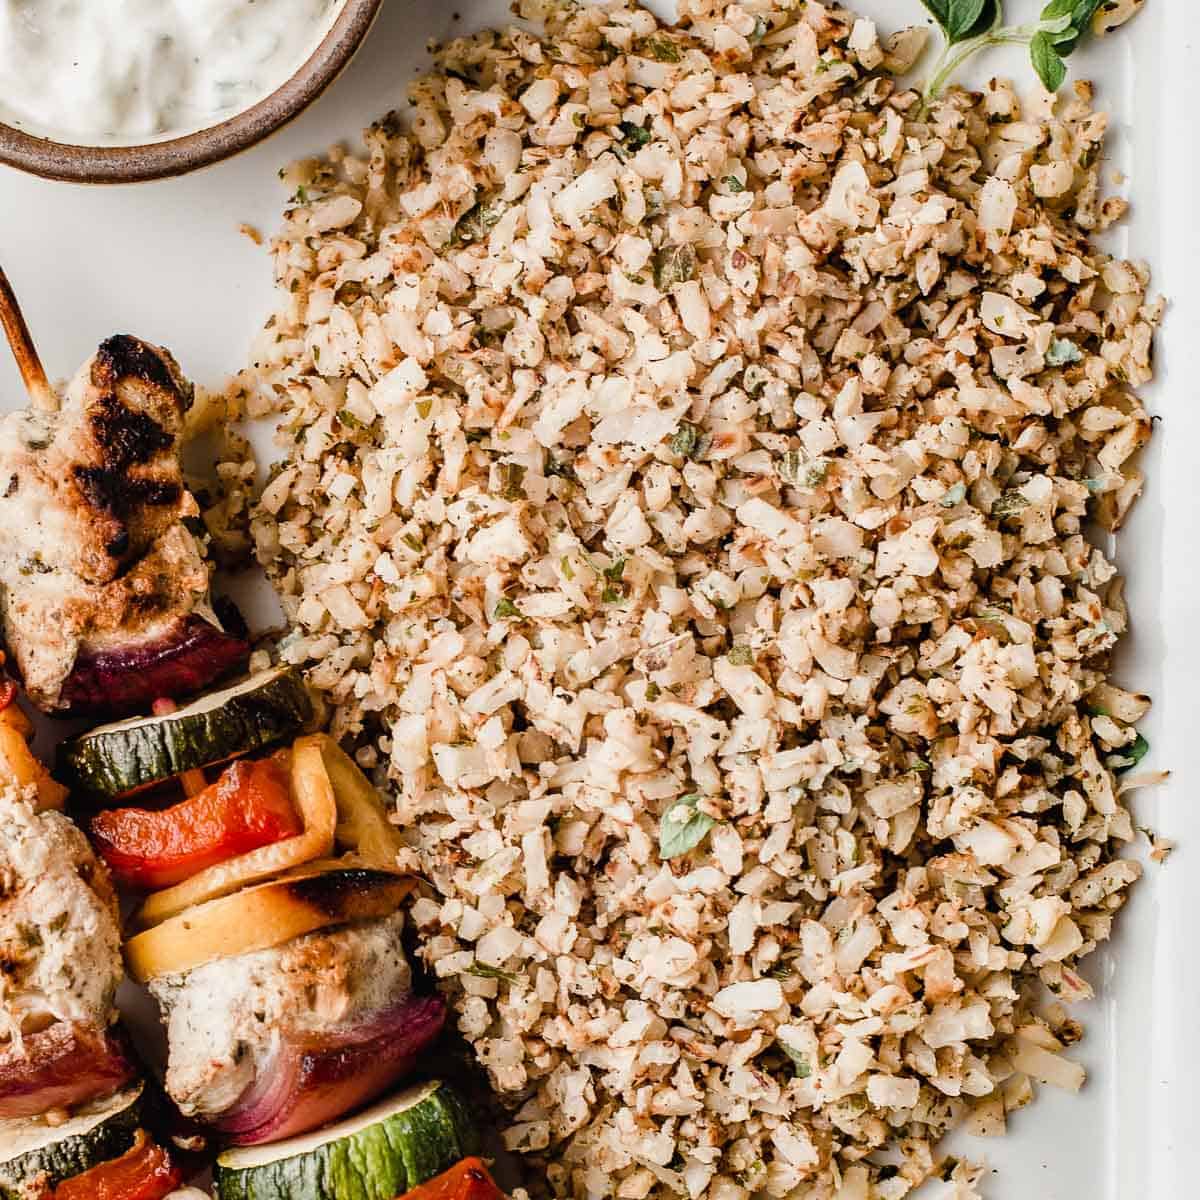 Greek cauliflower rice with chicken kabobs.